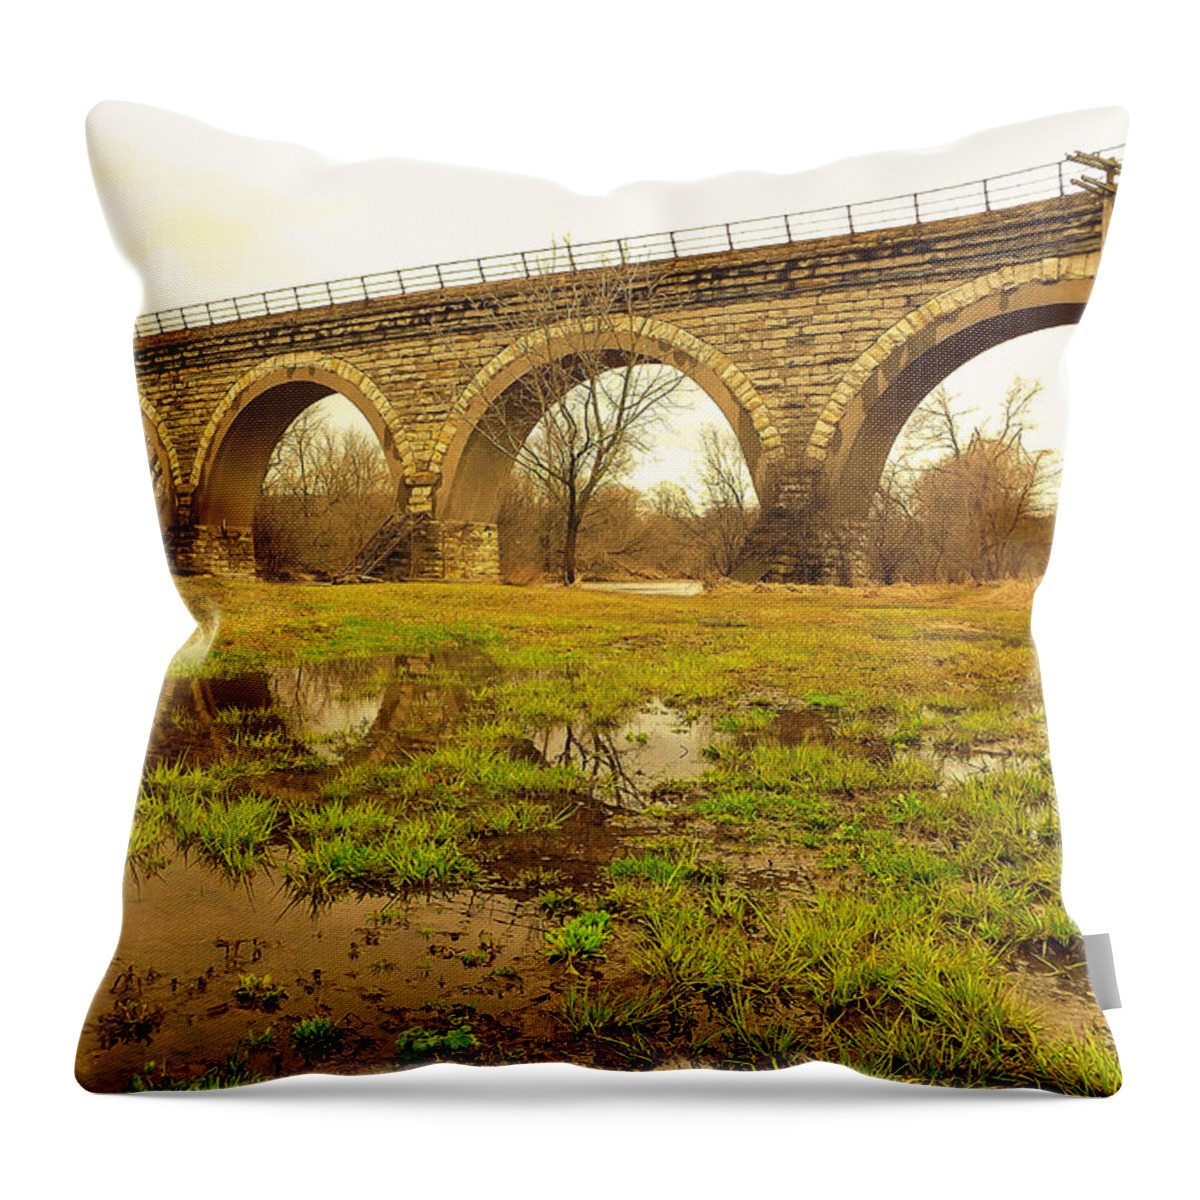 Historical Five Arch Bridge Throw Pillow featuring the photograph Historical Five Arch Bridge by Viviana Nadowski